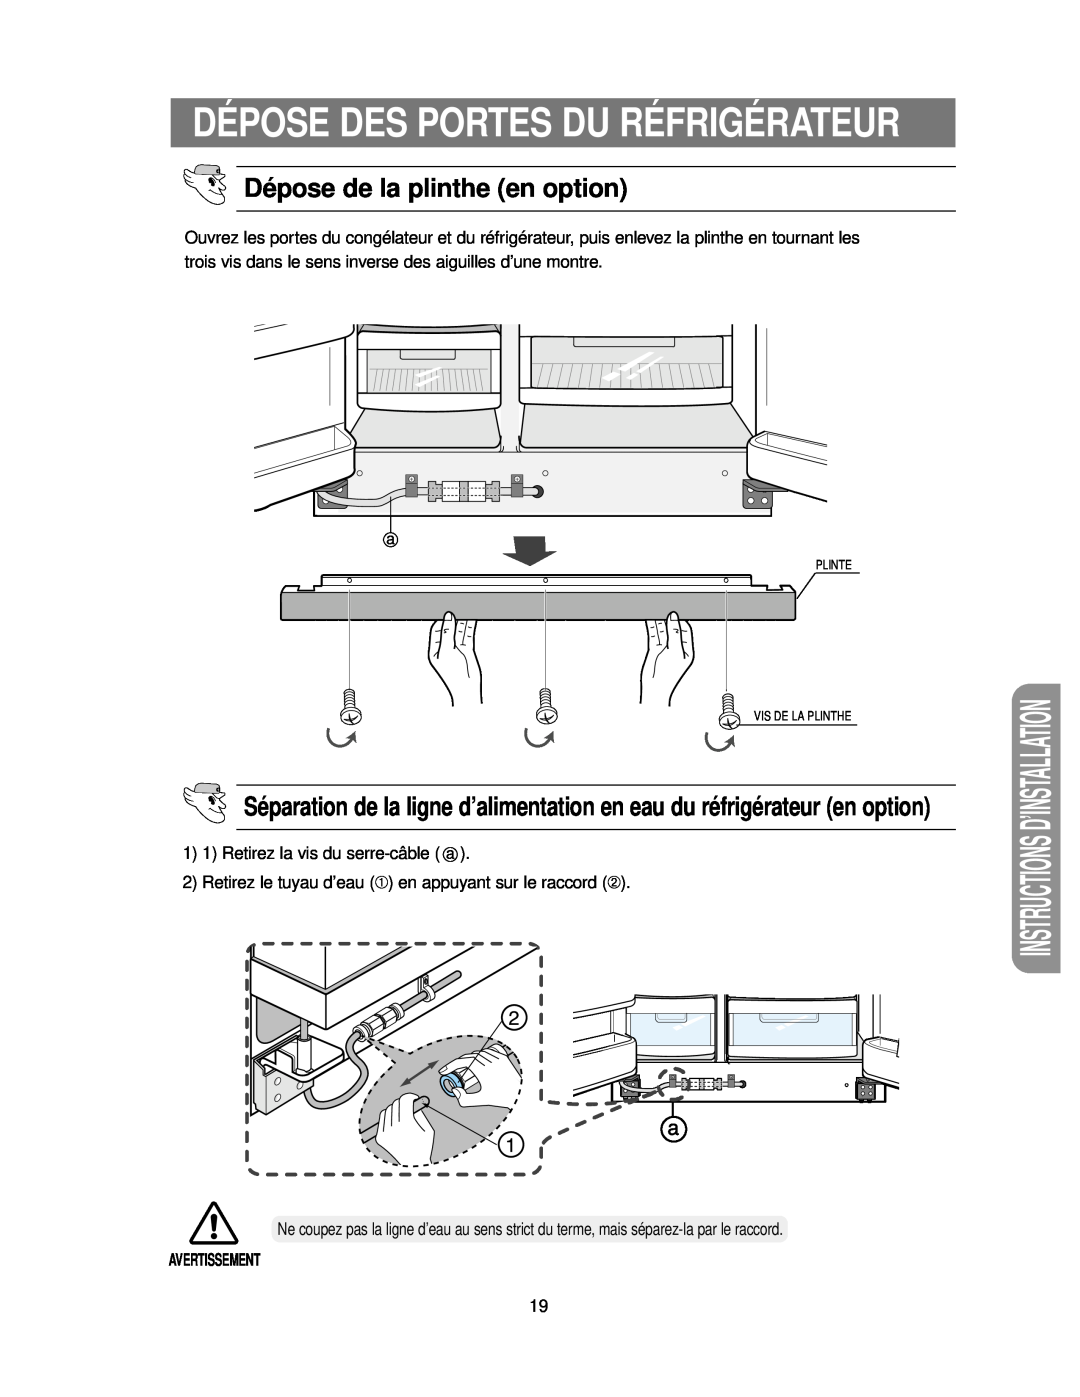 Samsung RS24KASW1/CAF Dépose Des Portes Du Réfrigérateur, Dépose de la plinthe en option, Instructions D’Installation 